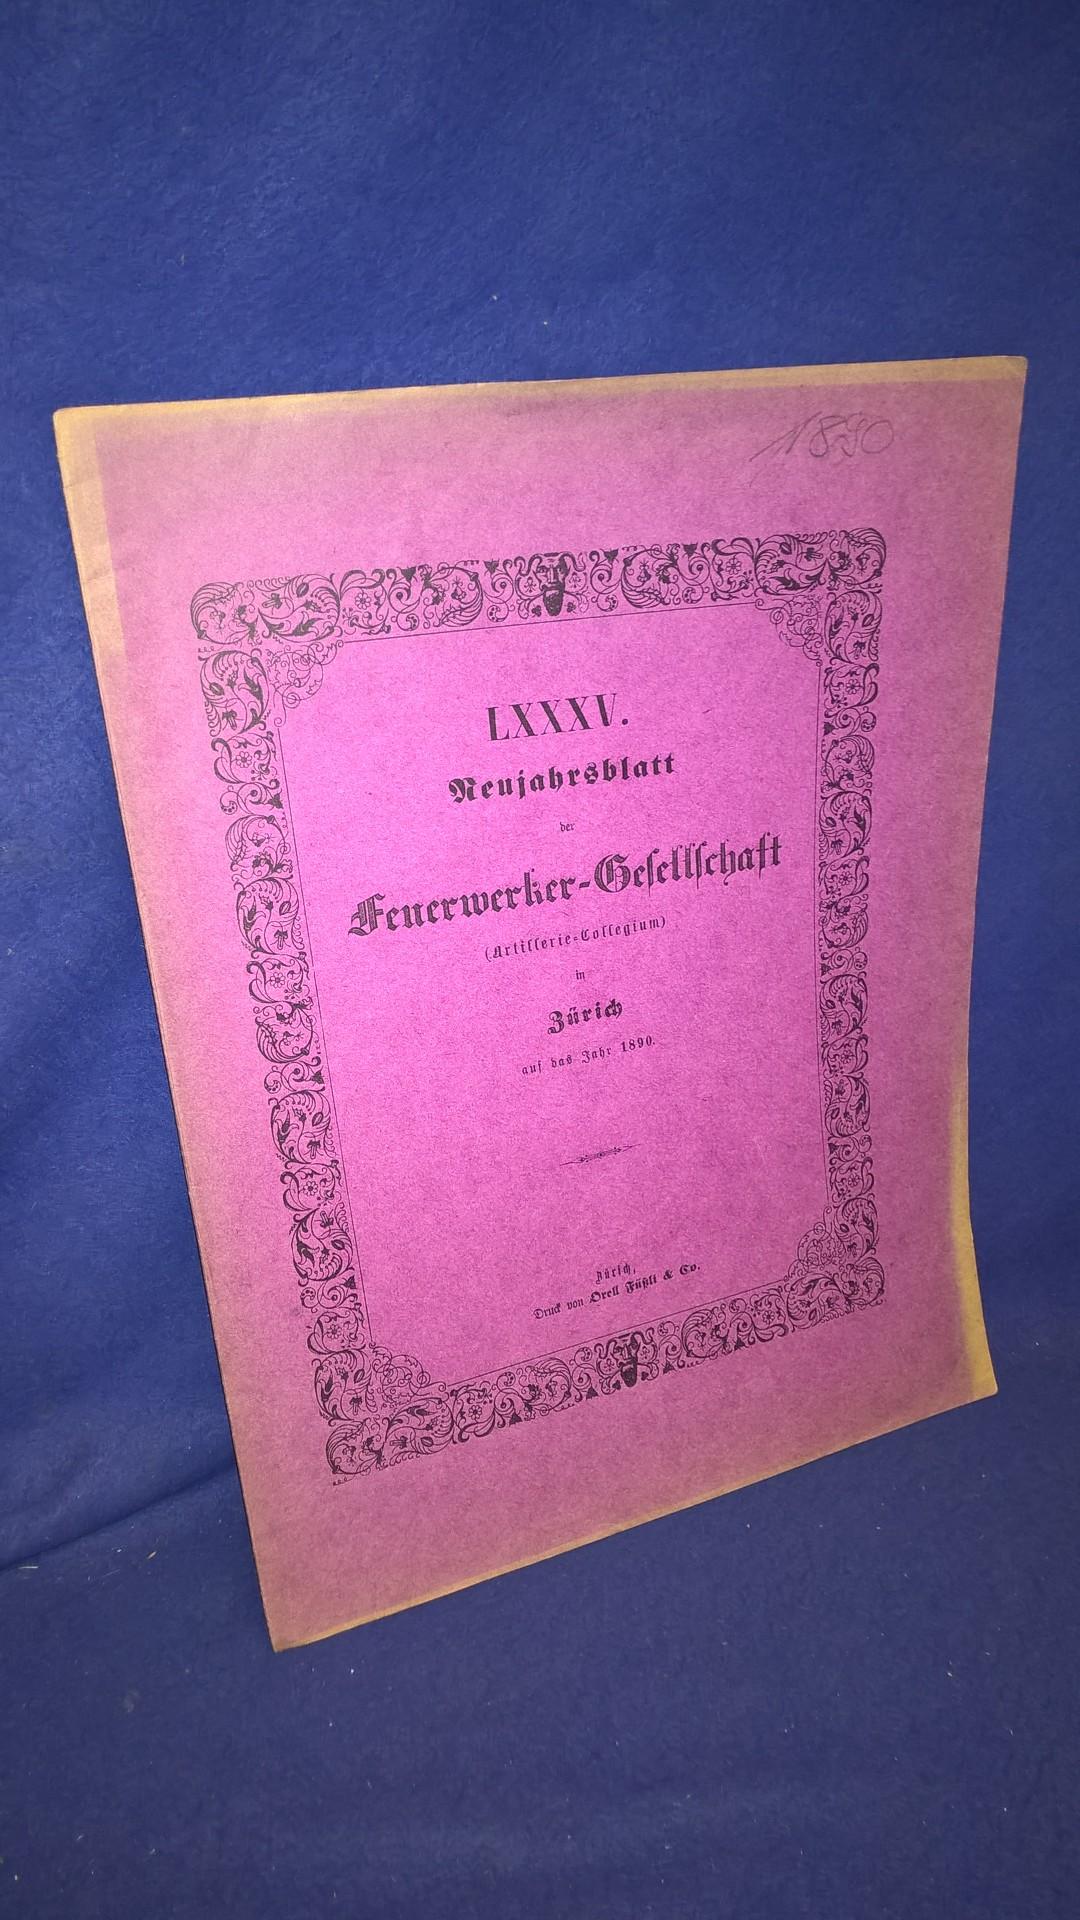 Biographie von Niklaus Emmanuel Friedrich von Coumoens, Oberst im Niederländischen Generalstab ( 1790-1832). Aus der Reihe: Neujahrsblatt der Feuerwerker-Gesellschaft ( Artillerie-Kollegium ) in Zürich auf das Jahr 1890.